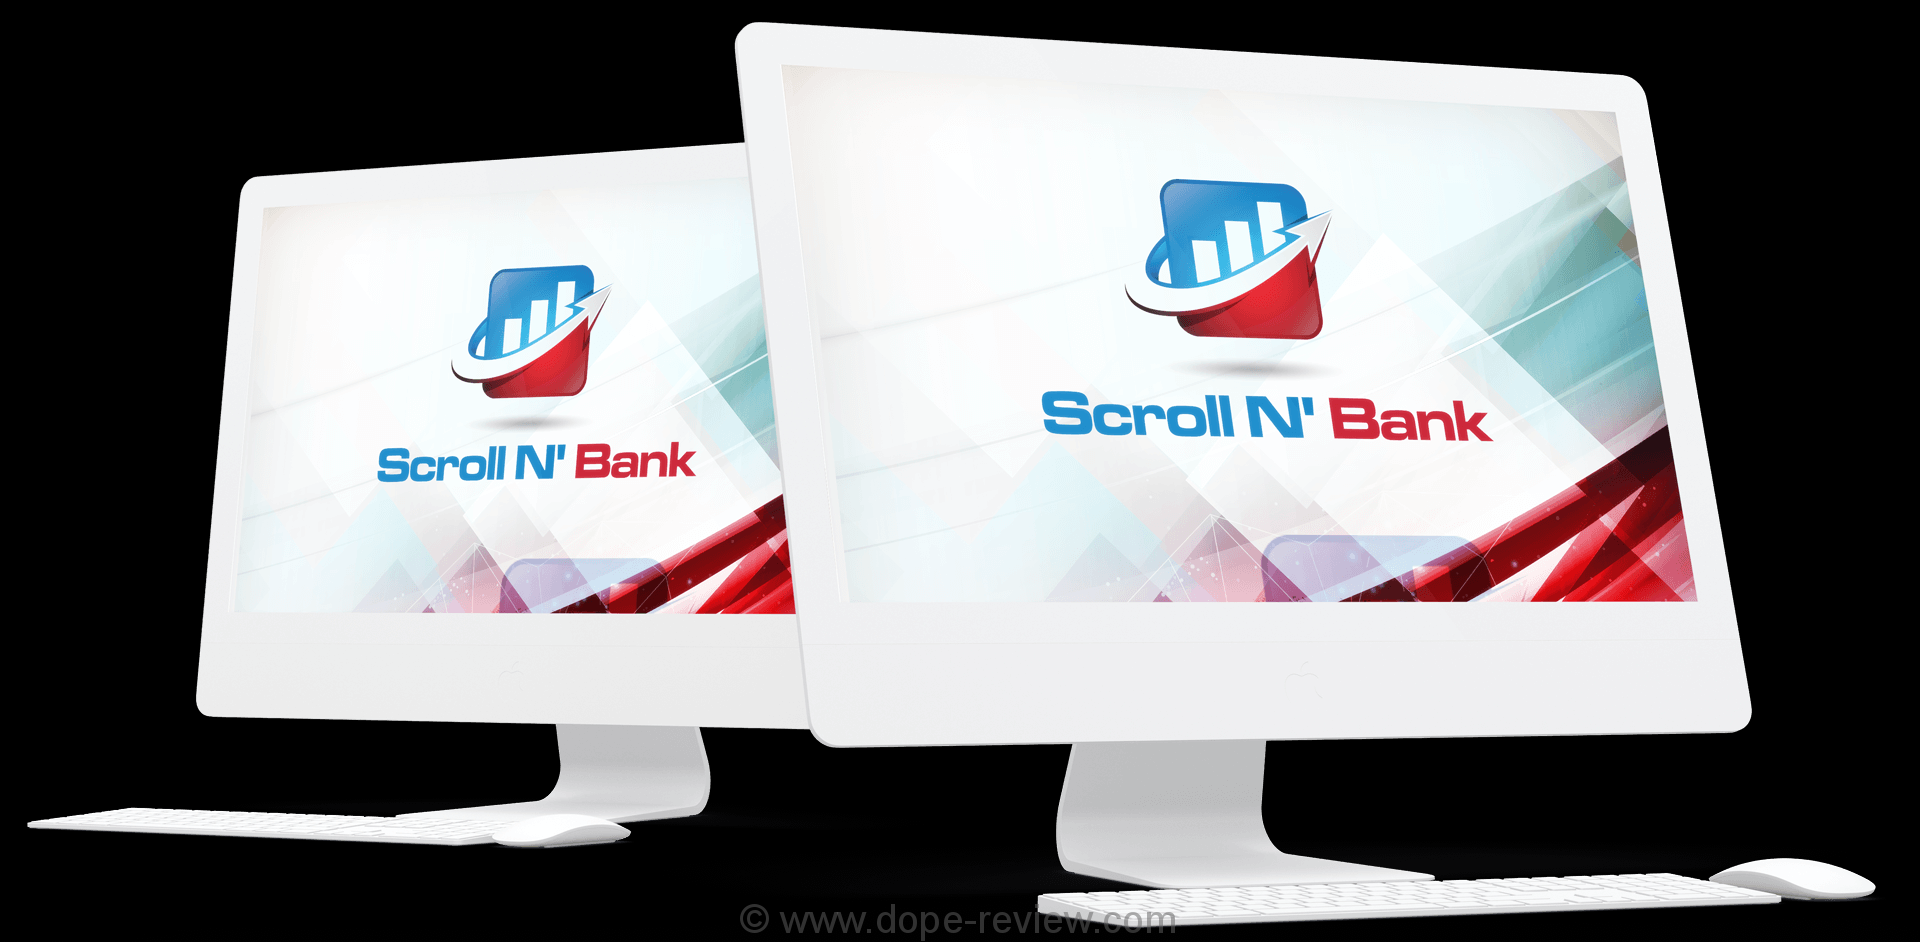 Scroll N Bank